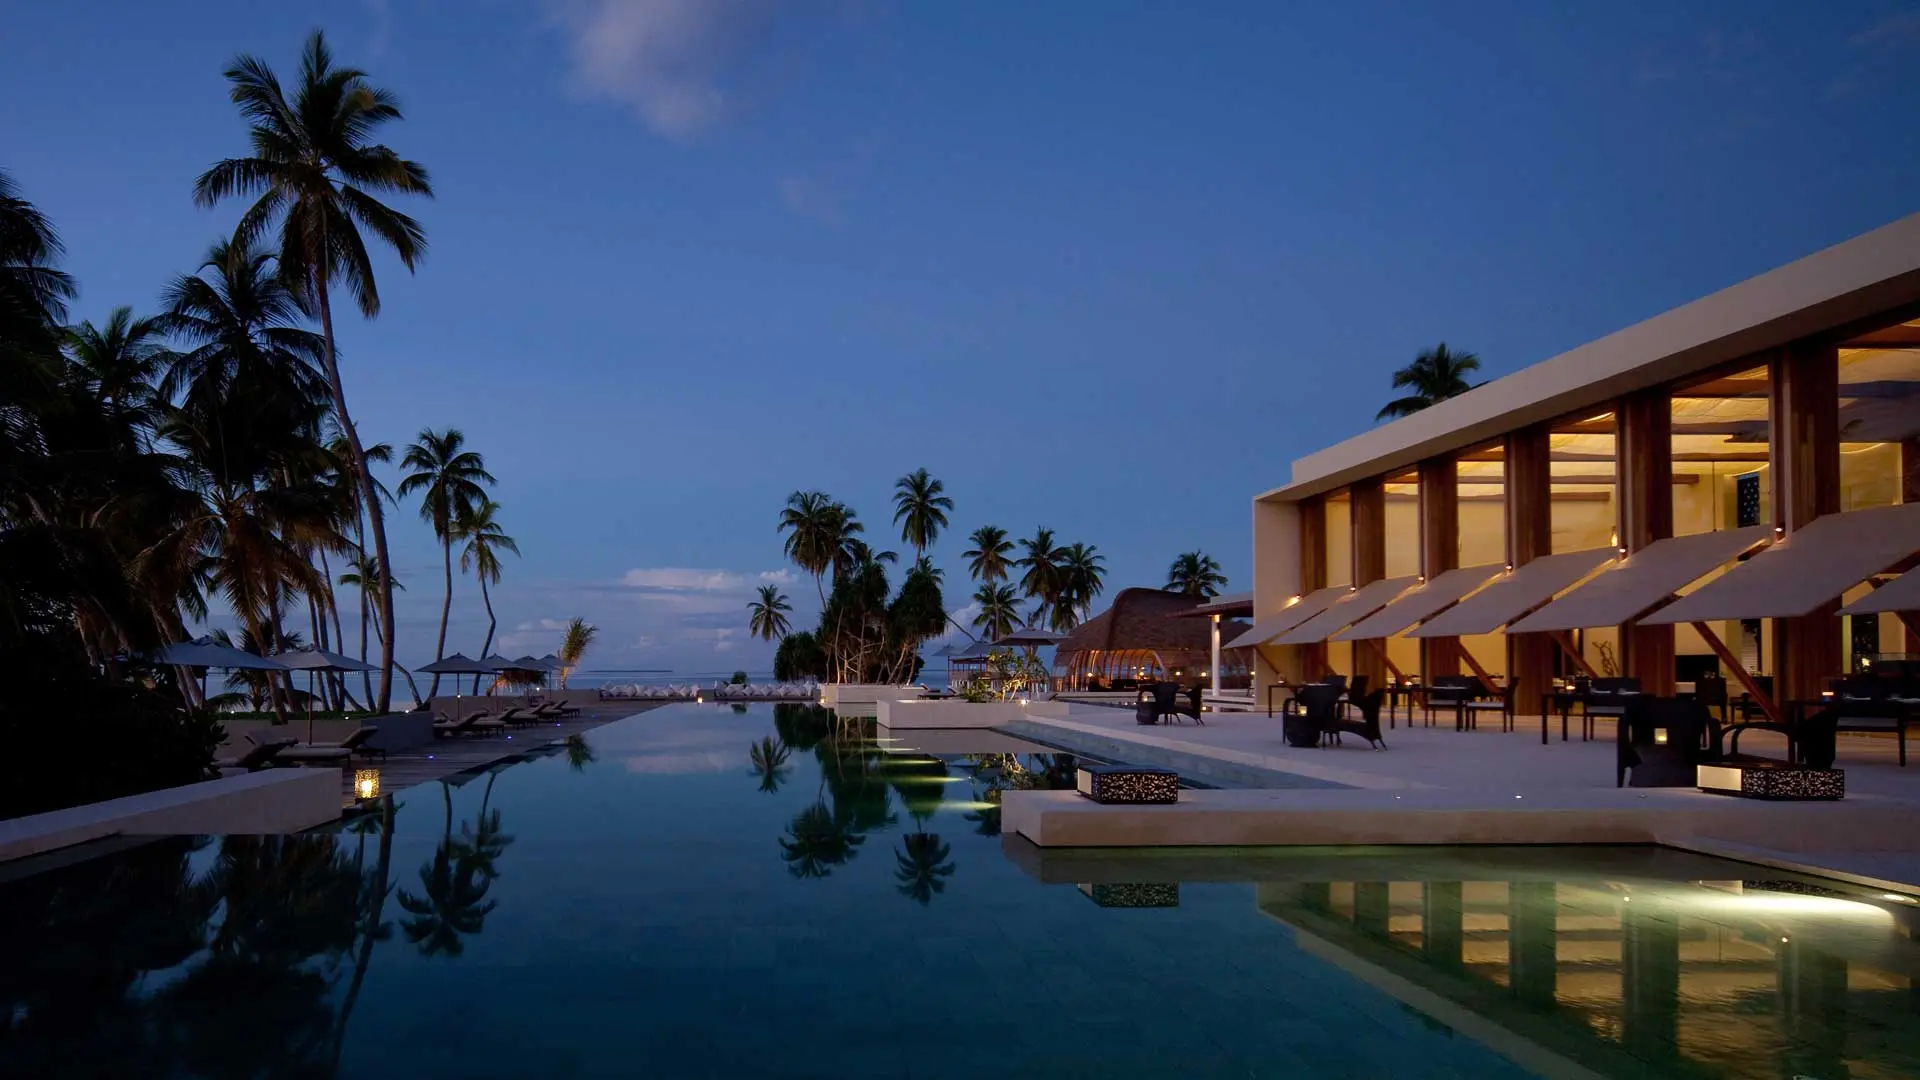 Hotel review Service & Facilities' - Park Hyatt Maldives Hadahaa - 7